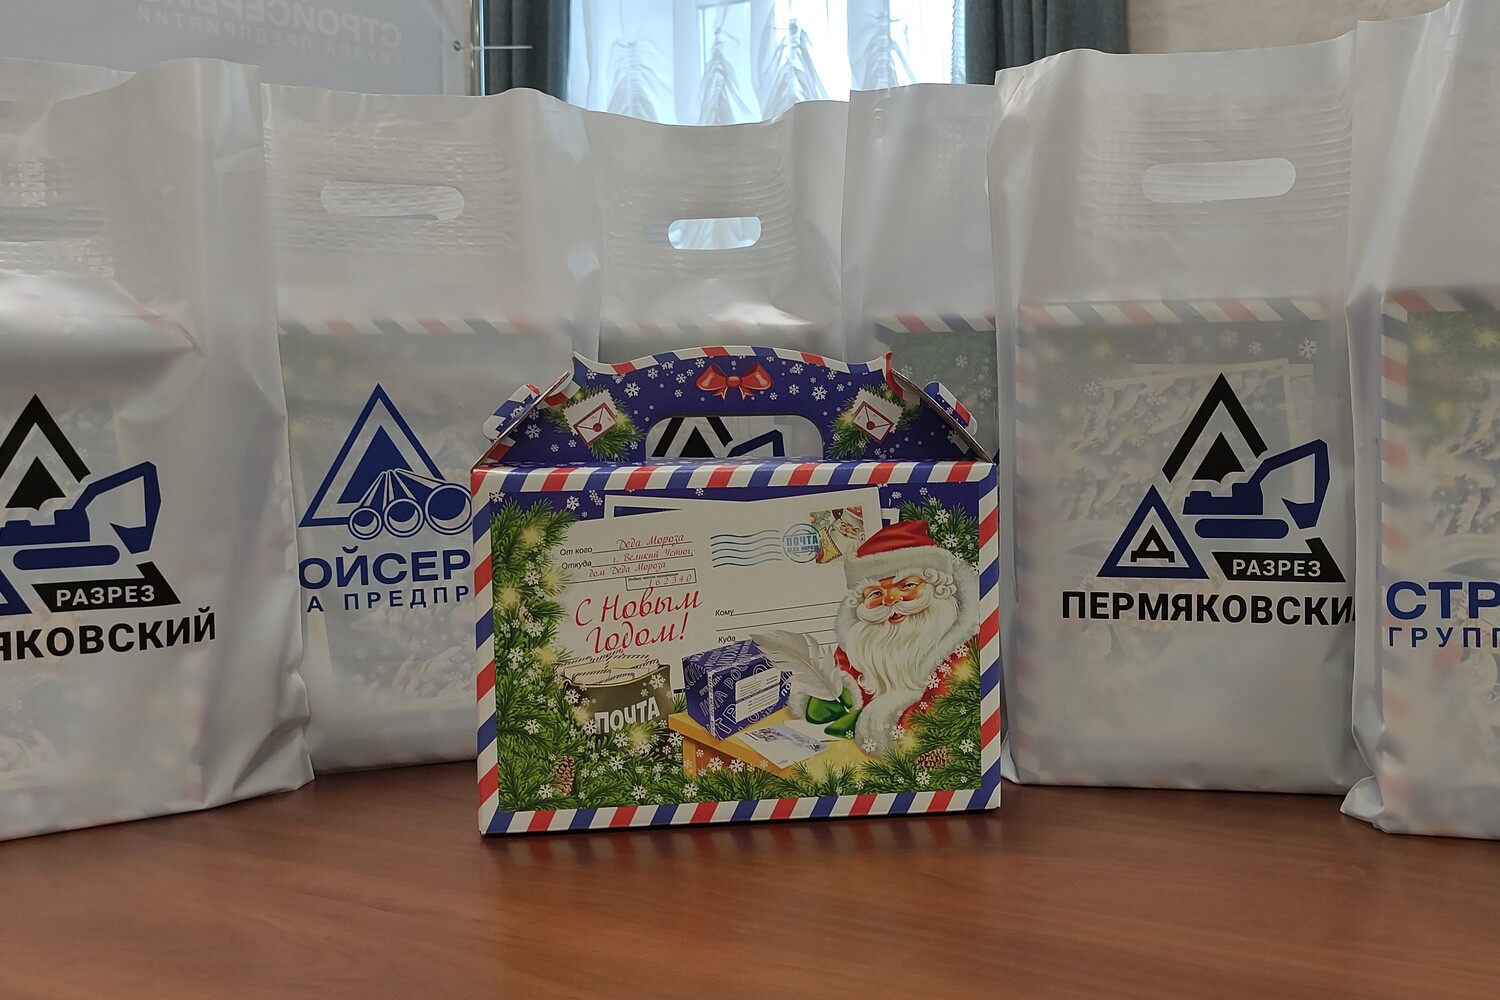 Разрез Пермяковский вручил новогодние подарки детям из кузбасских сел. Стройсервис